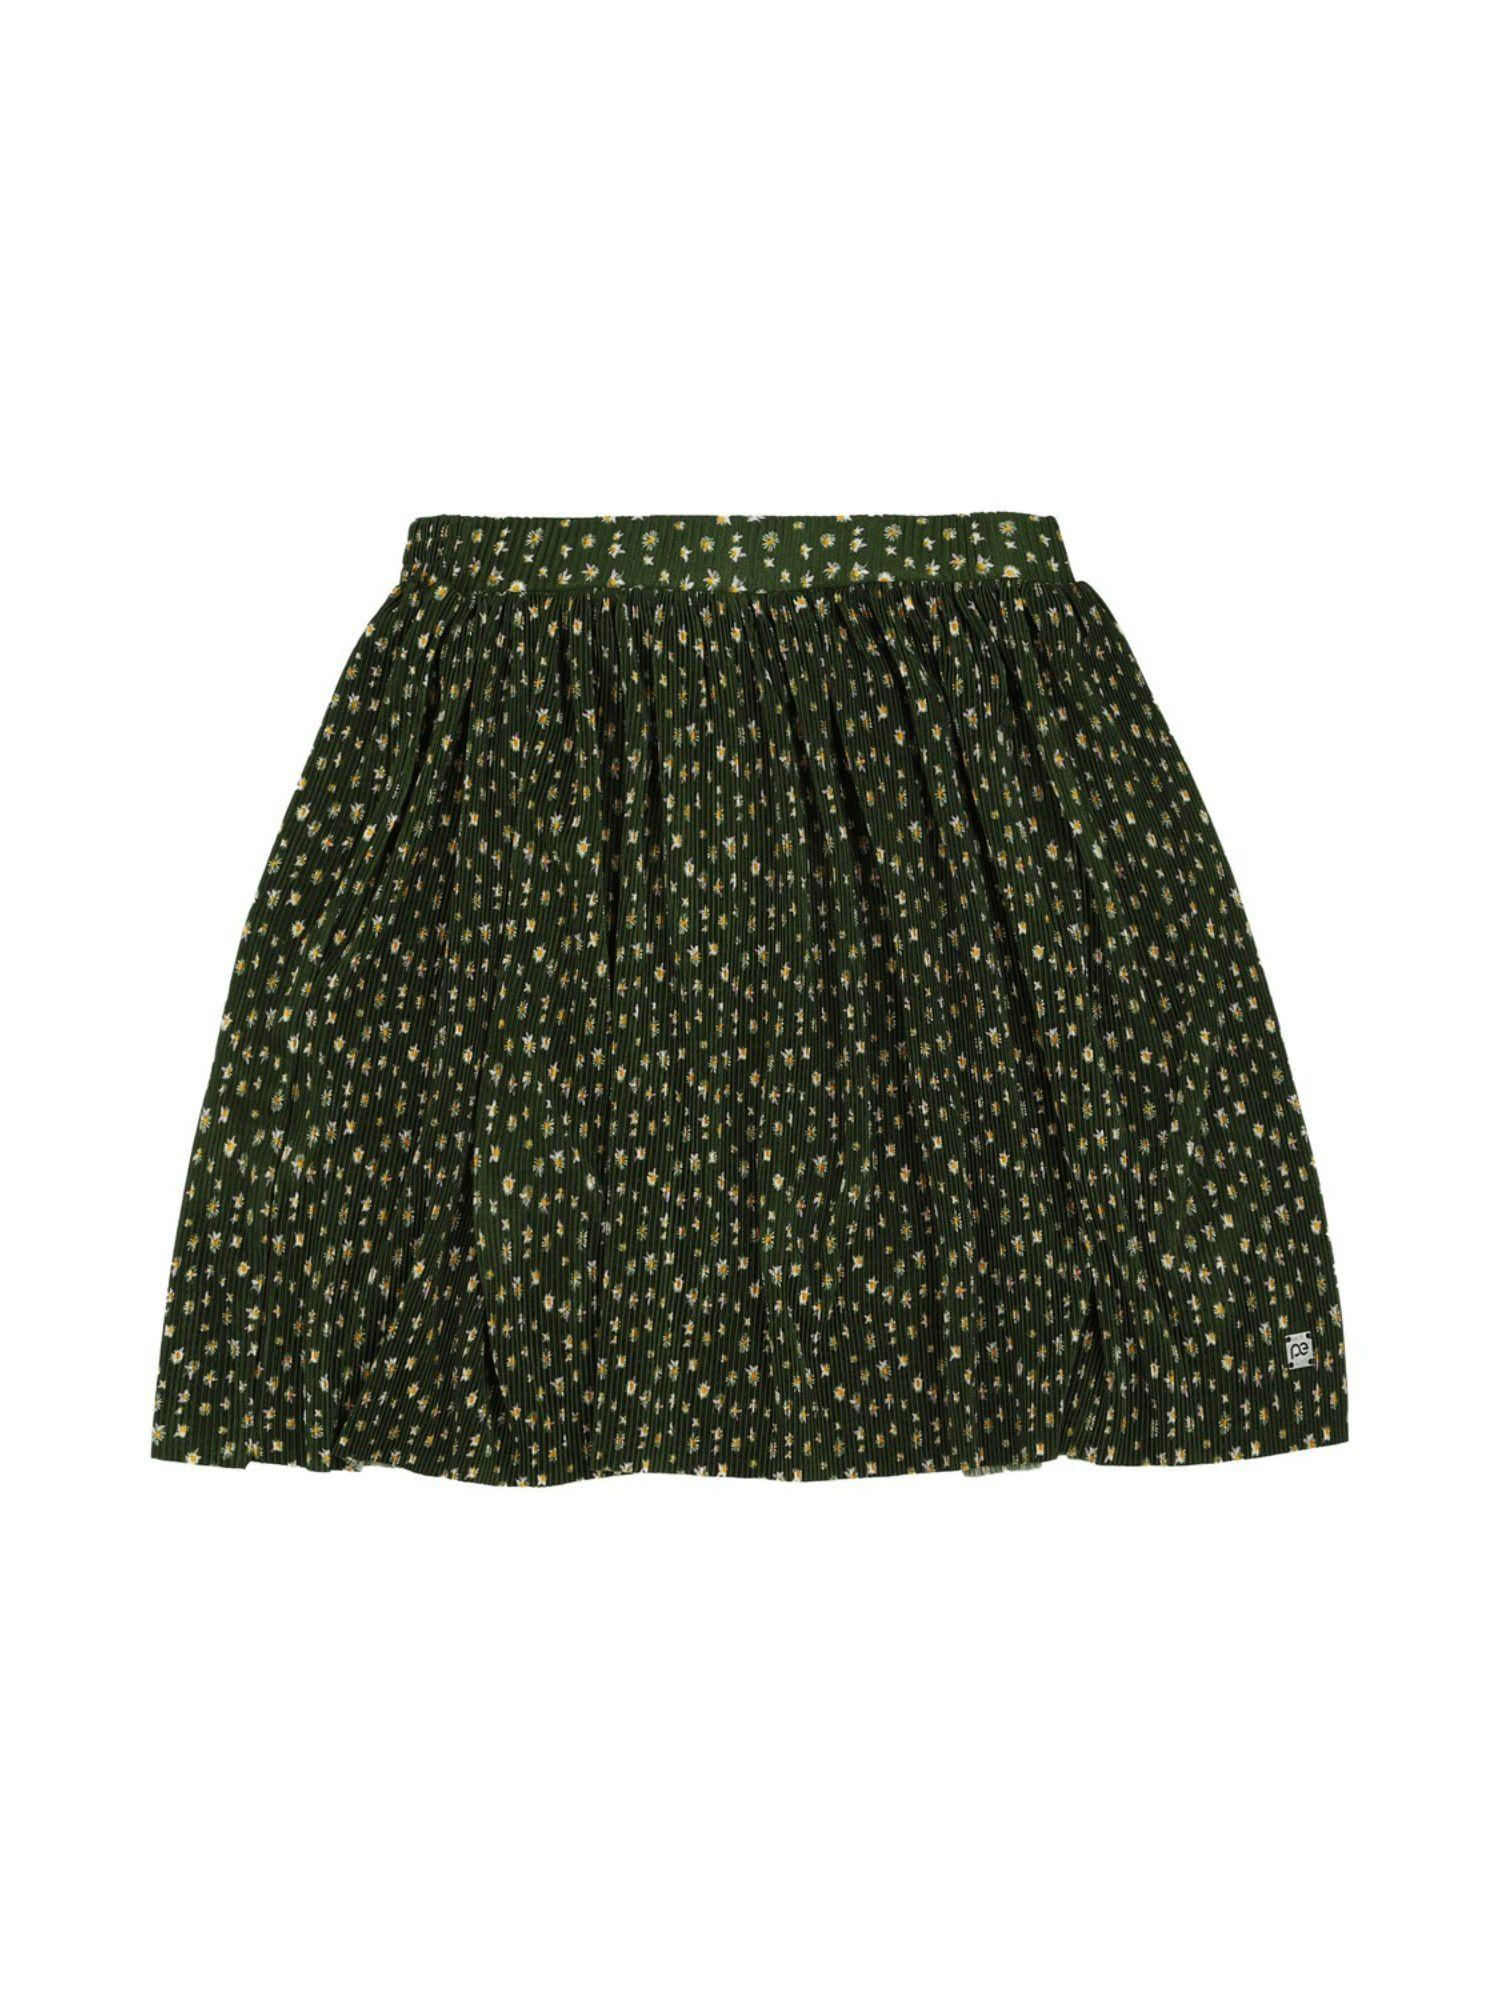 girls green skirt